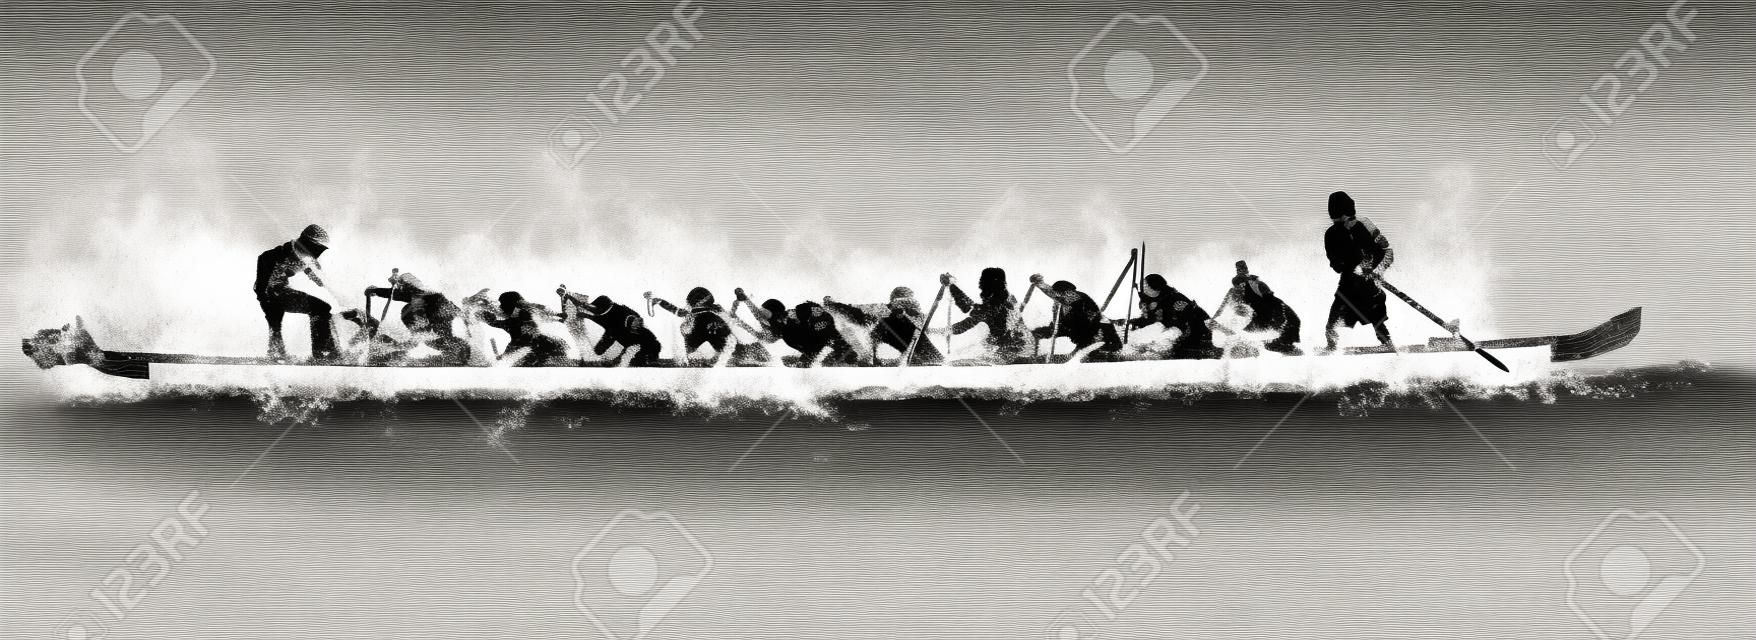 ilustración de un barco del dragón en la acción, en blanco y negro sobre fondo blanco